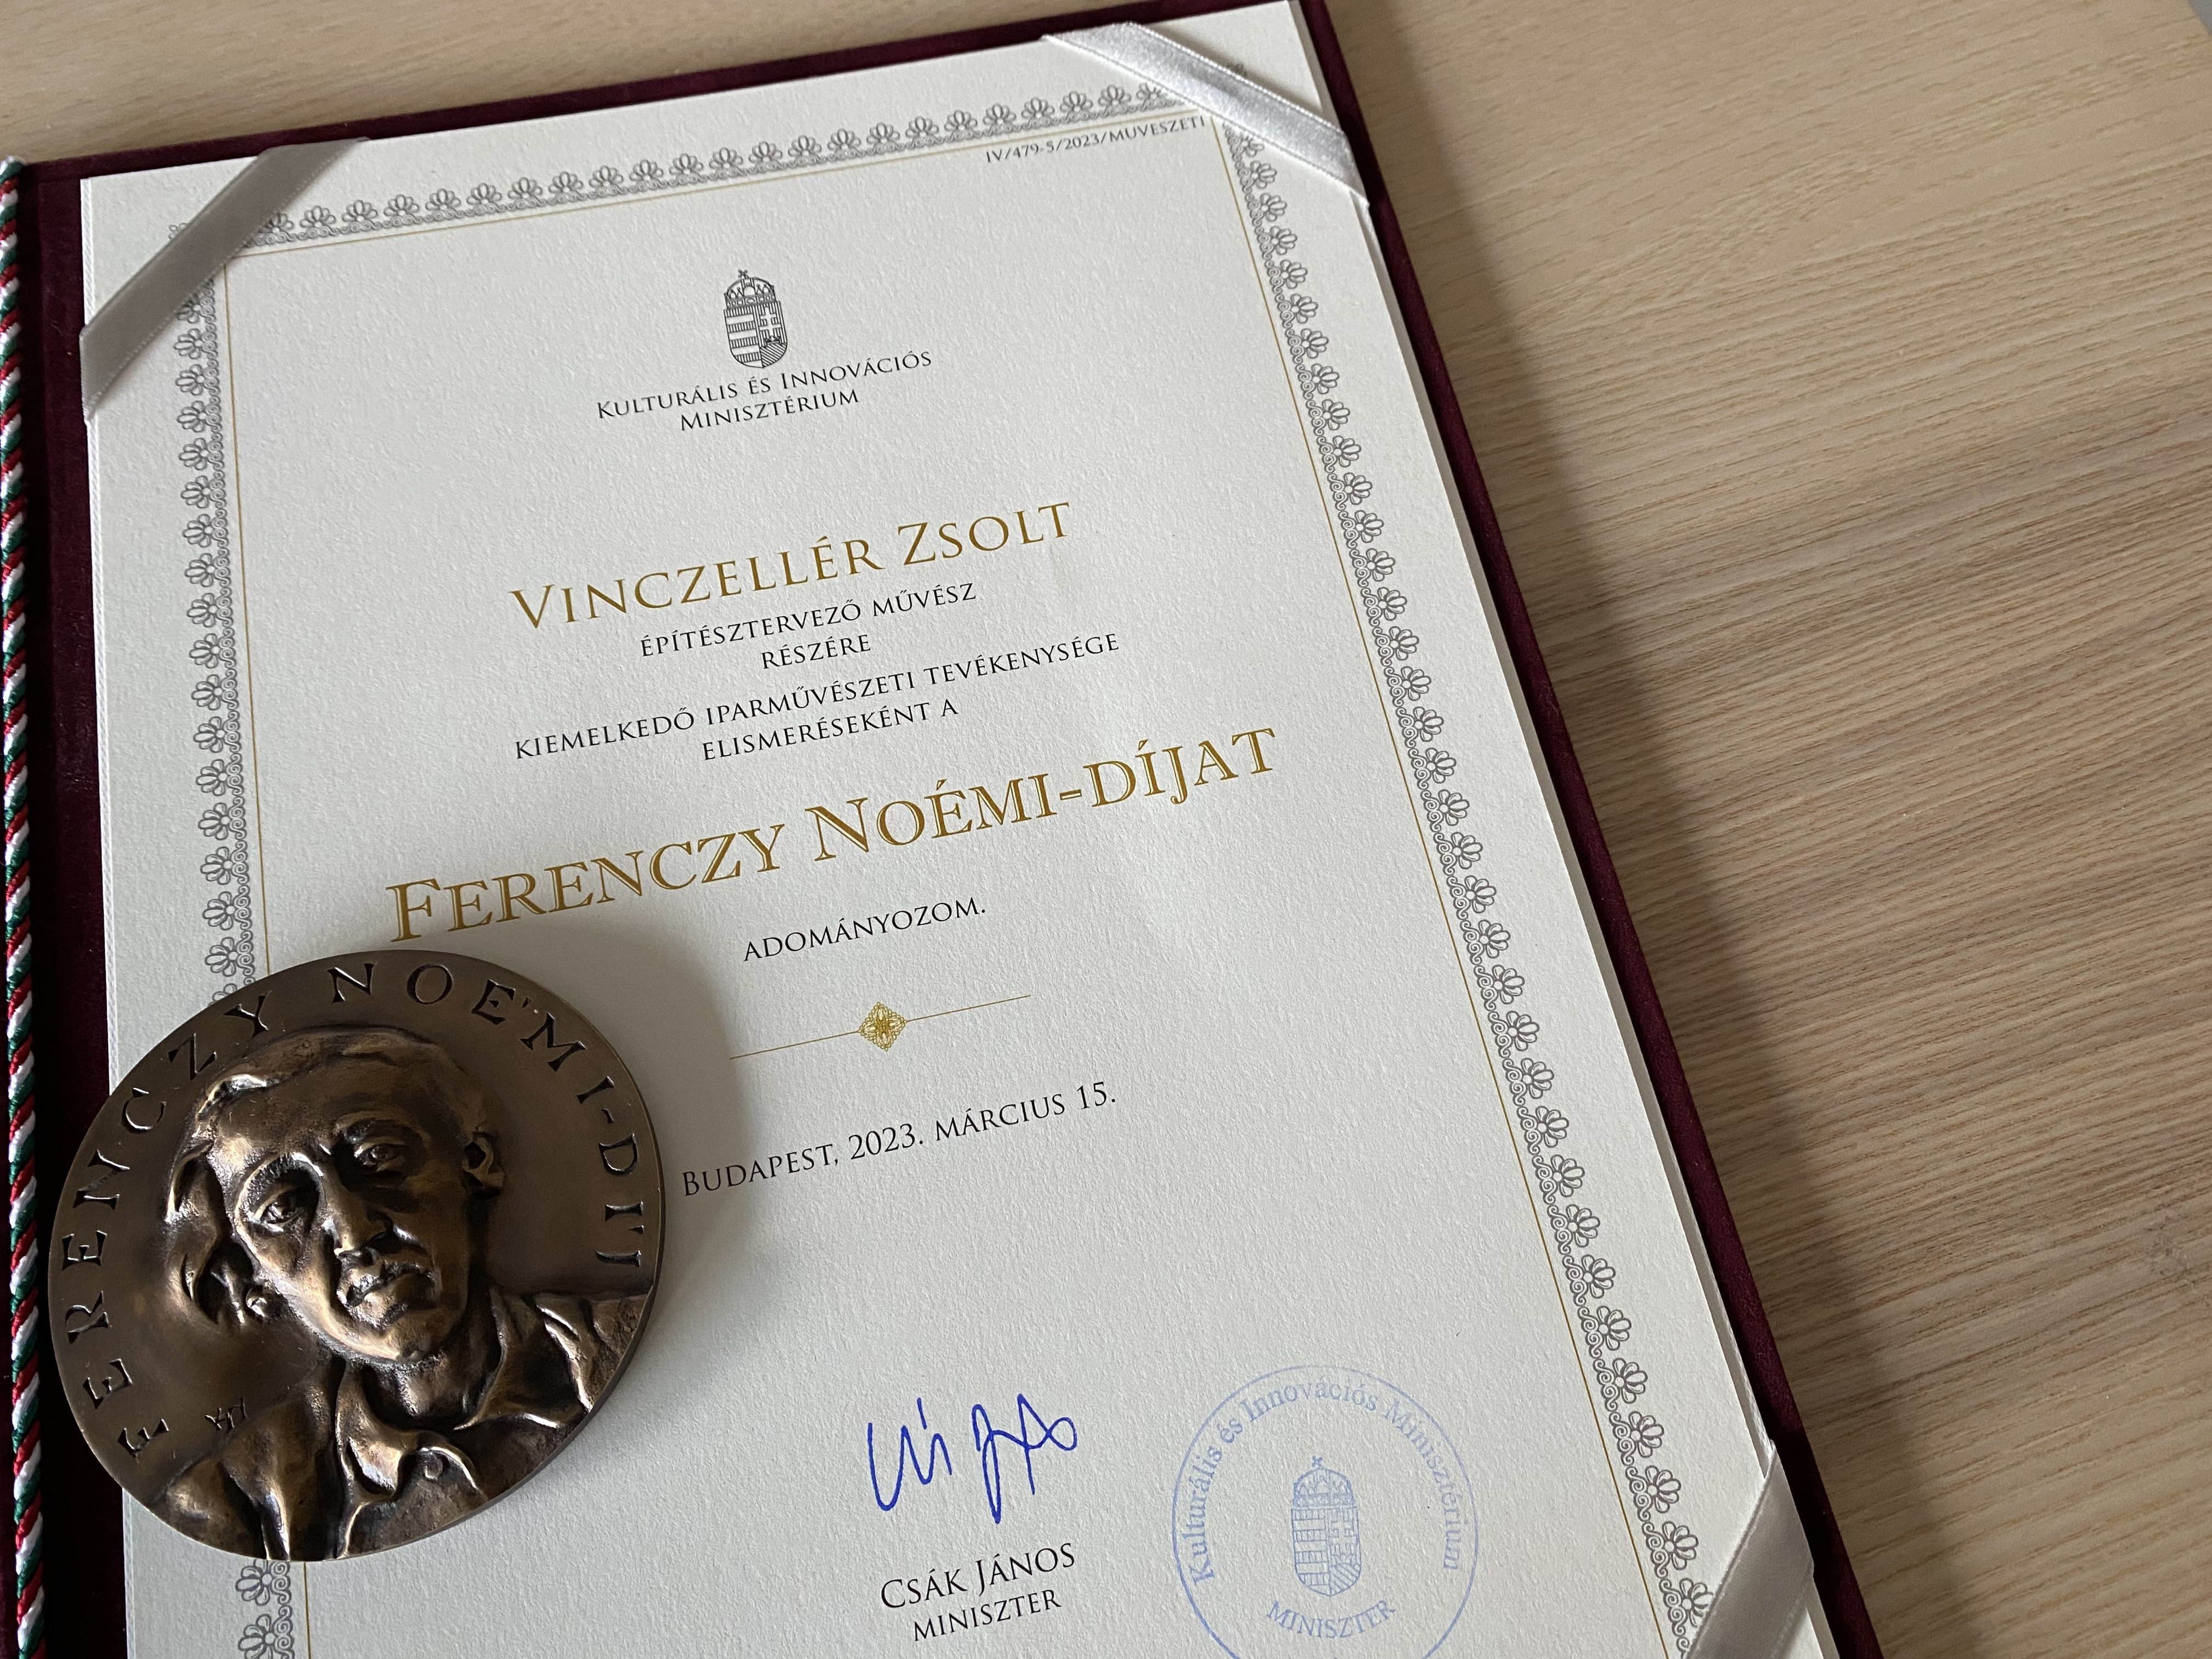 Ferenczy Noémi-díjat kapott Vinczellér Zsolt építész